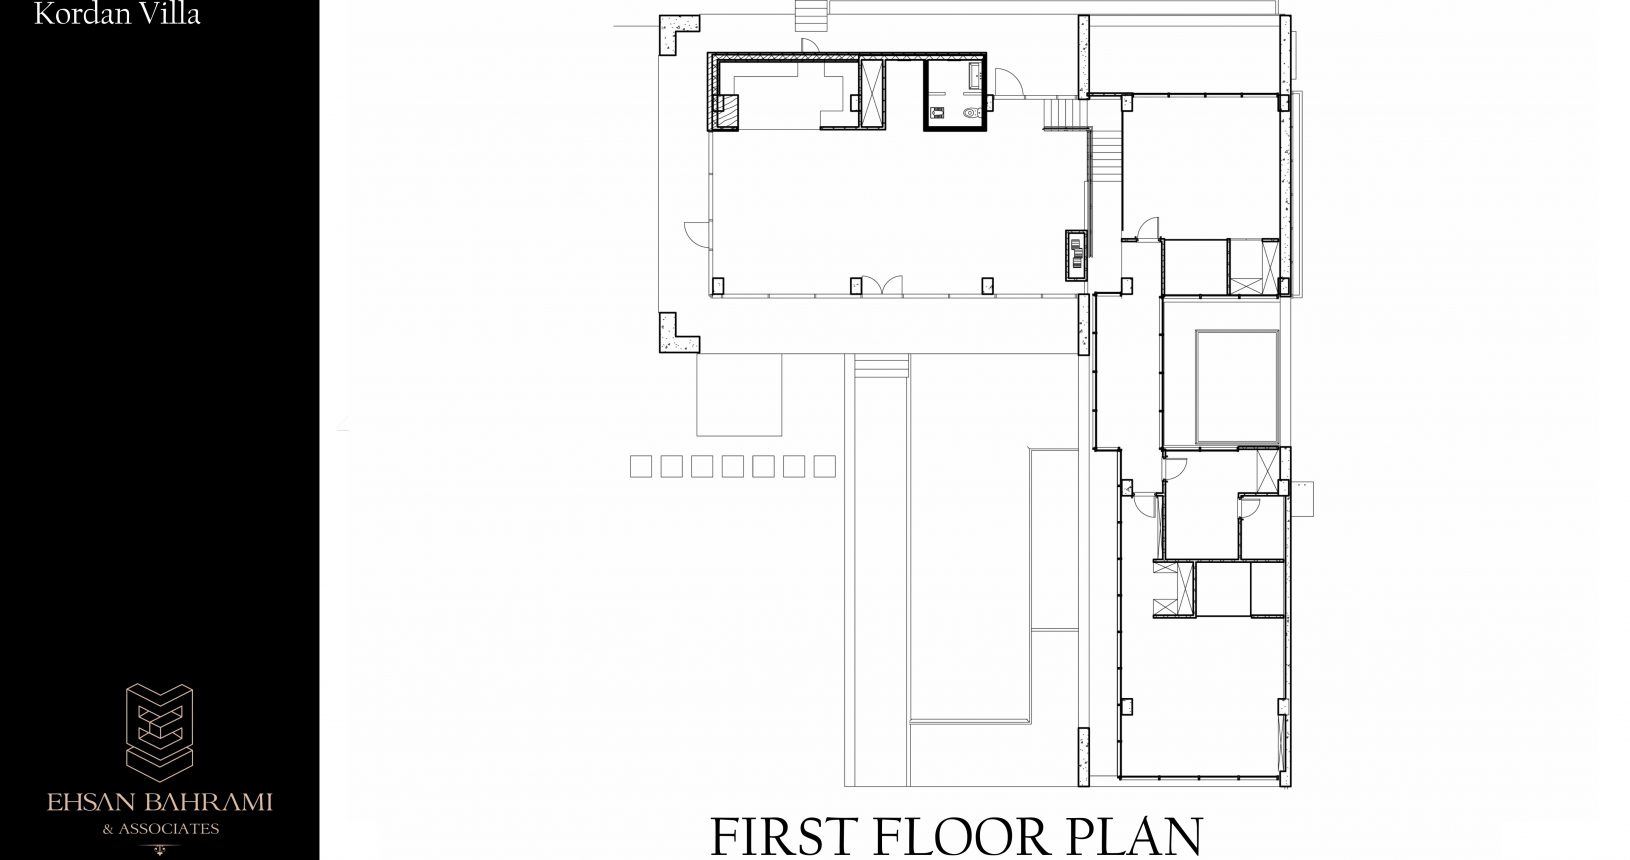 Chaarbagh-e Kordan First Floor Plan